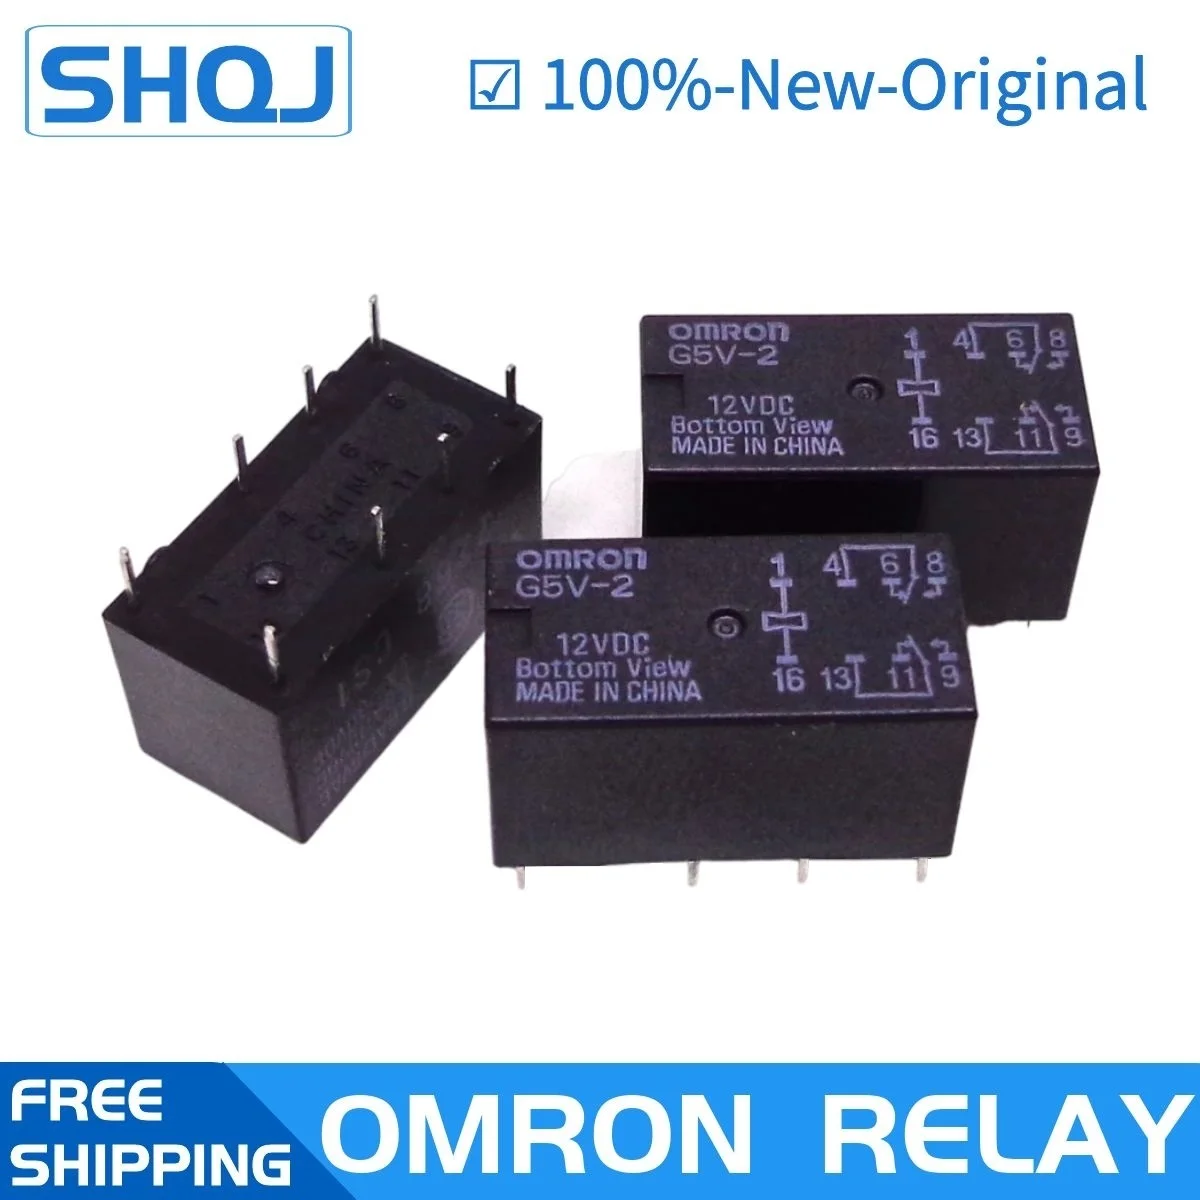 OMRON RELAY 10pcs G5V 2 5VDC 12VDC 24VDC G5V 1 G5V 2 G5V 2 H1 5V 12V 24V  Brand new and original relay|Relays| - AliExpress